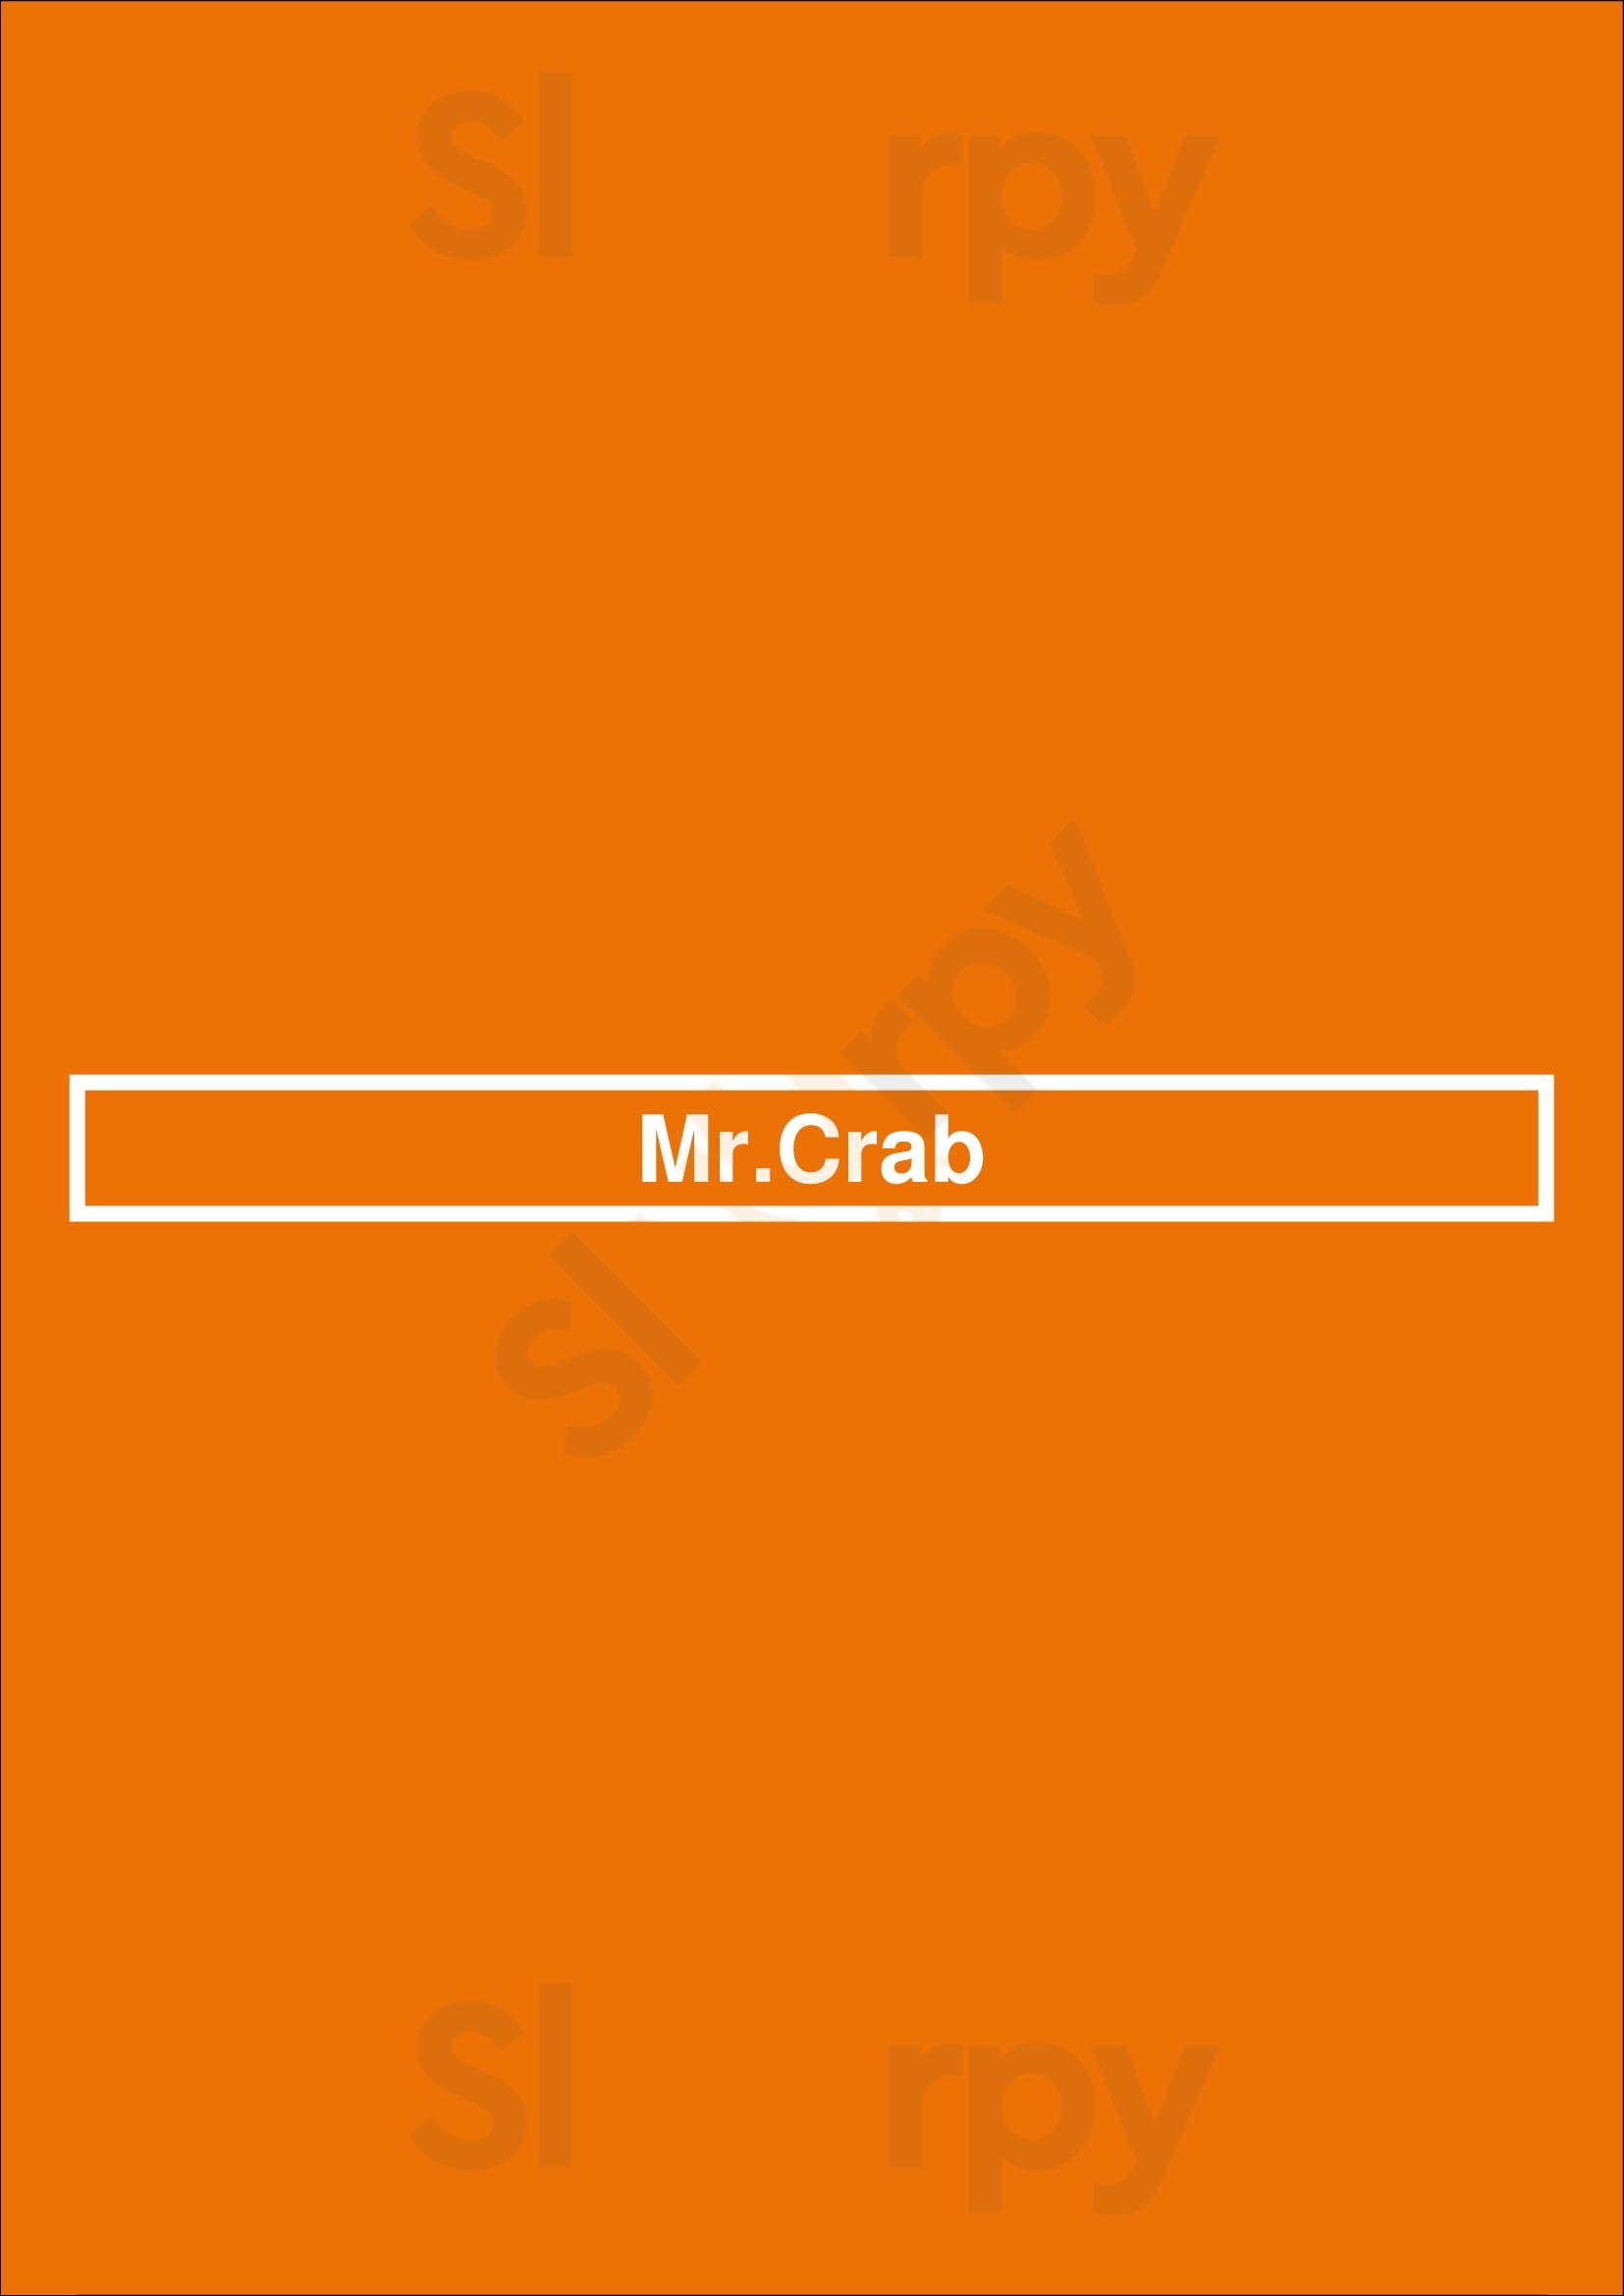 Mr.crab Amsterdam Menu - 1